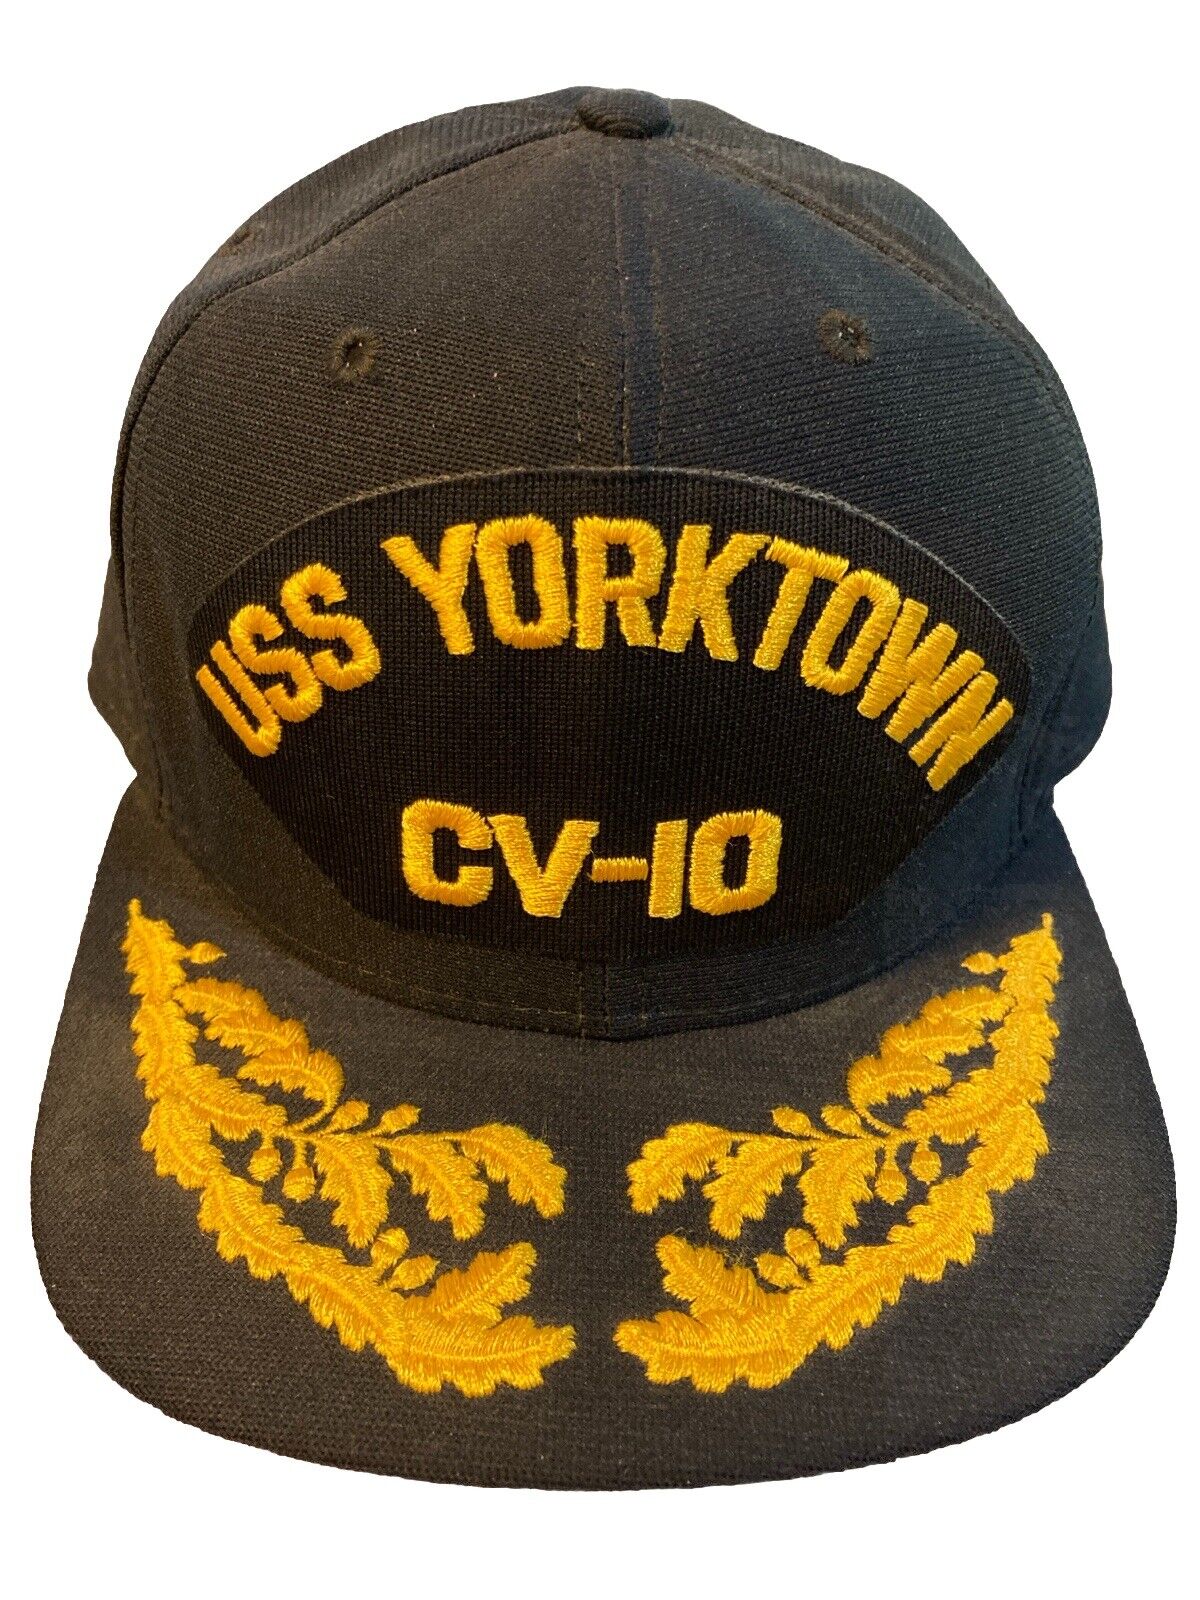 New Era Vtg USS YorkTown CV-10 Black  Cap SnapBack Trucker Cap Hat Made in USA